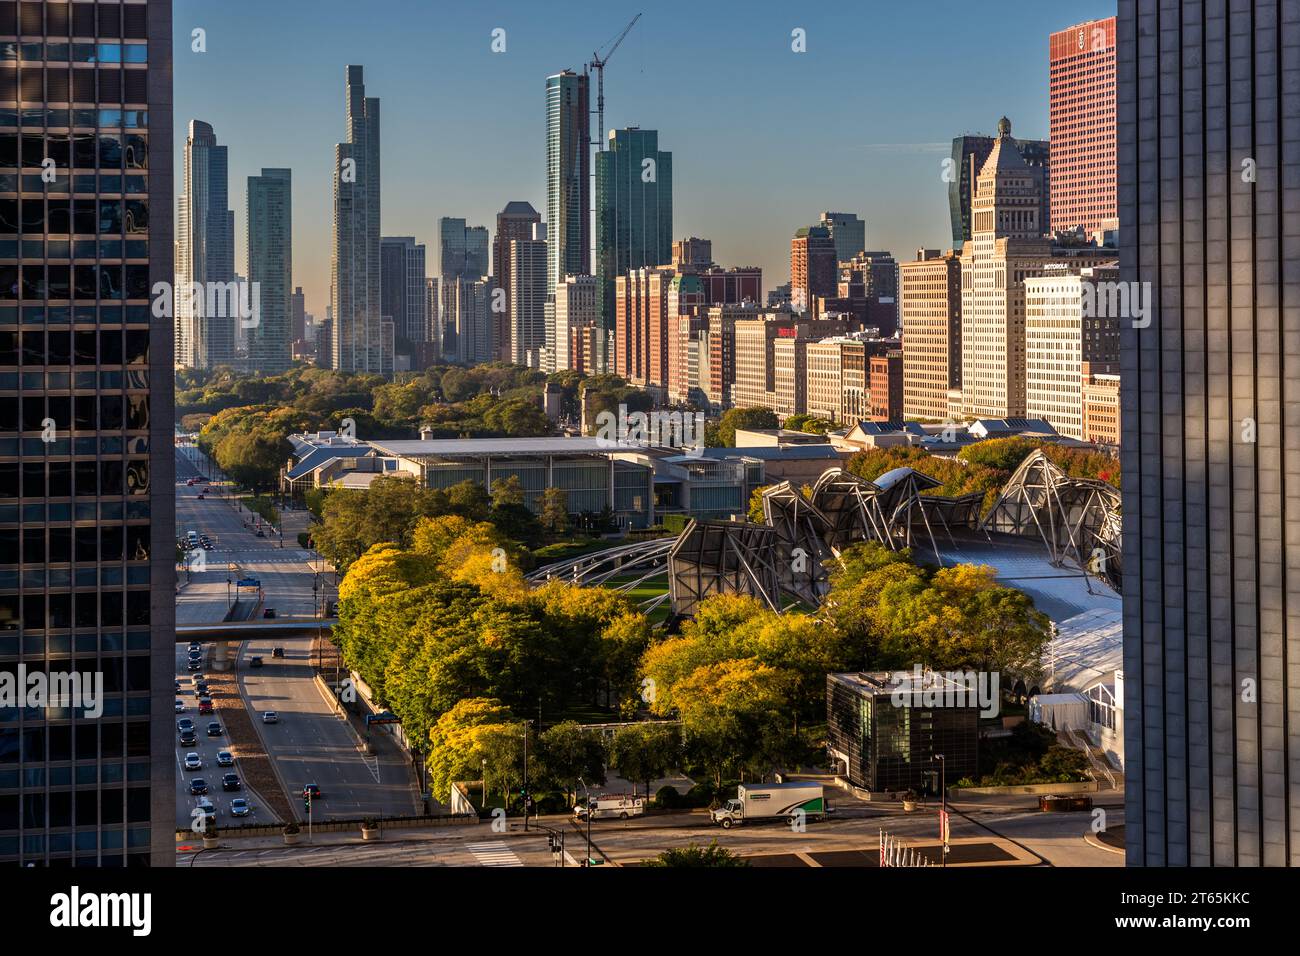 Der Millennium Park, der ursprünglich für den Beginn des neuen Jahrtausends geplant war, ist seit 2004 für die Öffentlichkeit zugänglich. Chicago, Usa Stockfoto